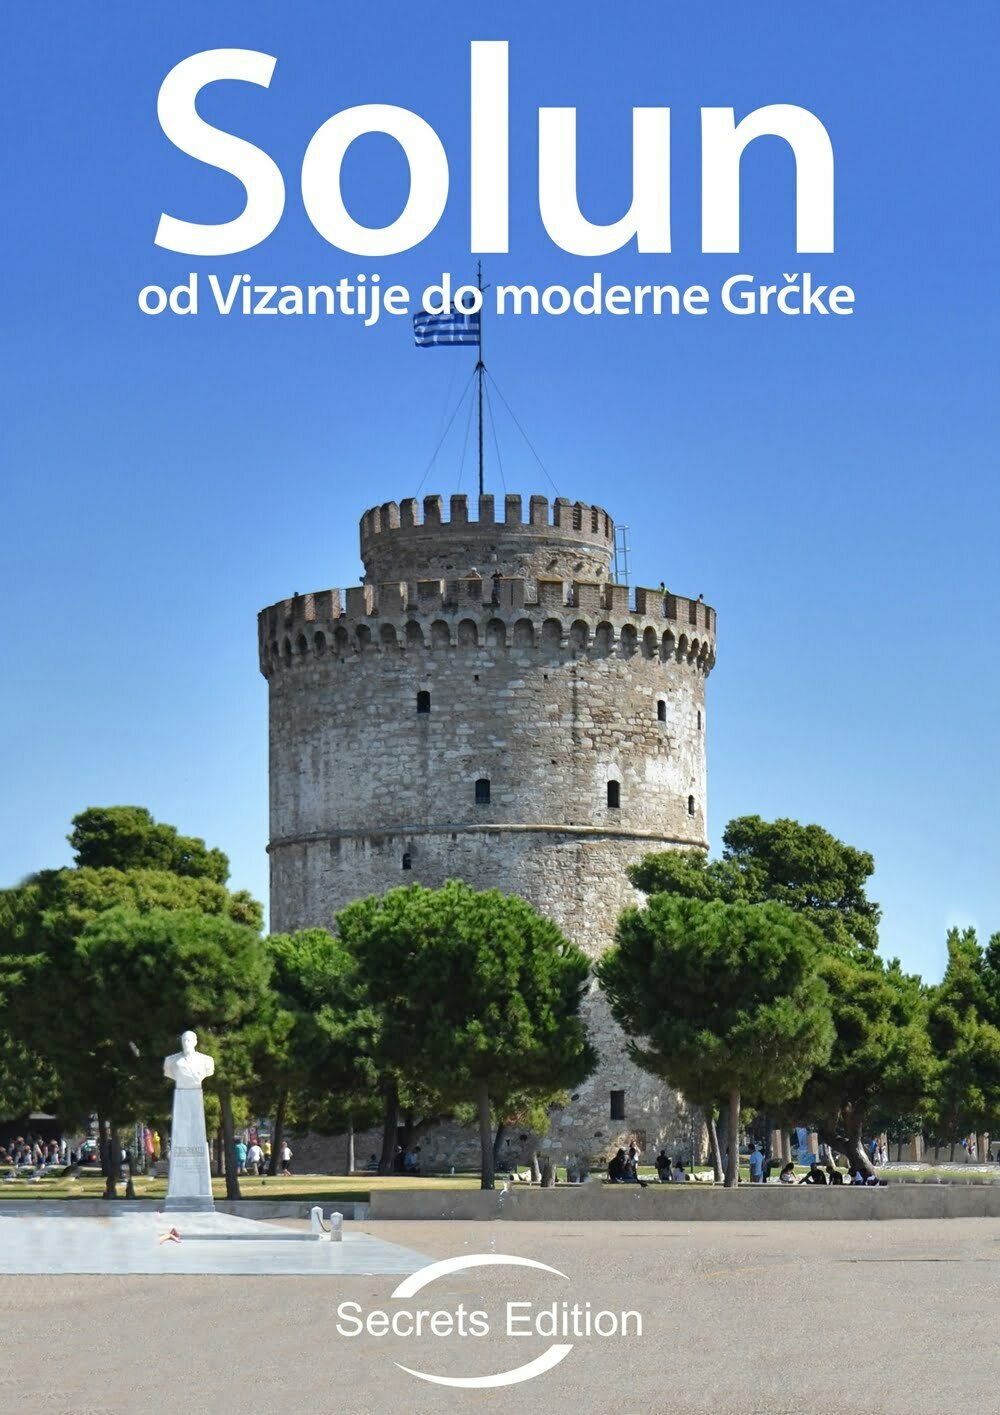 Σέρβος blogger δημιούργησε e-book για τη Θεσσαλονίκη